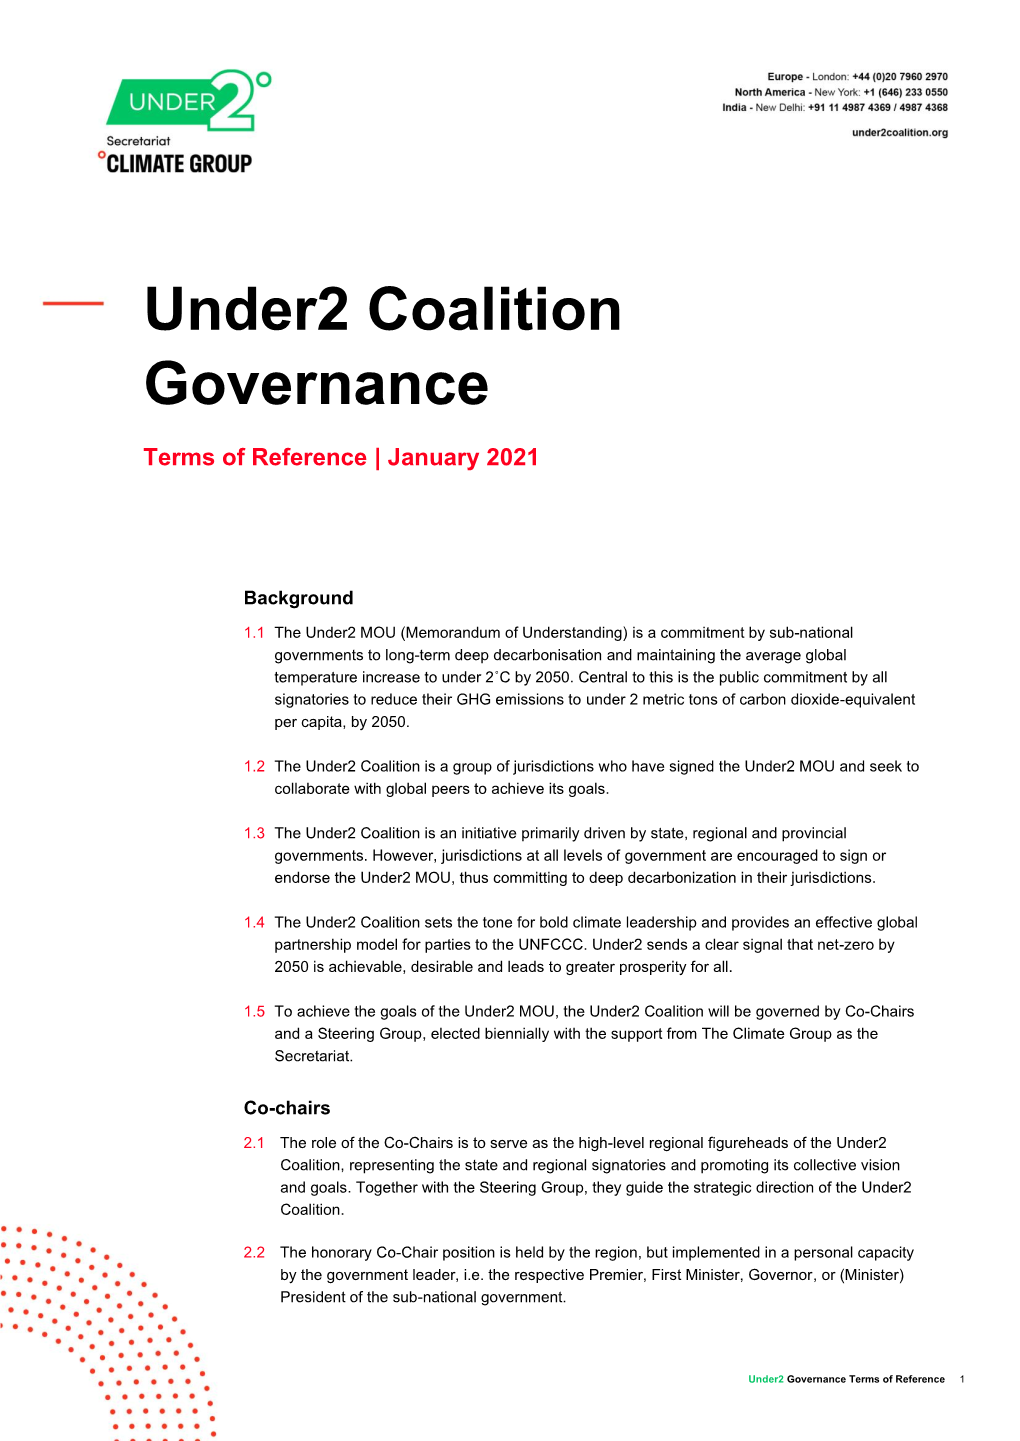 Under2 Coalition Governance